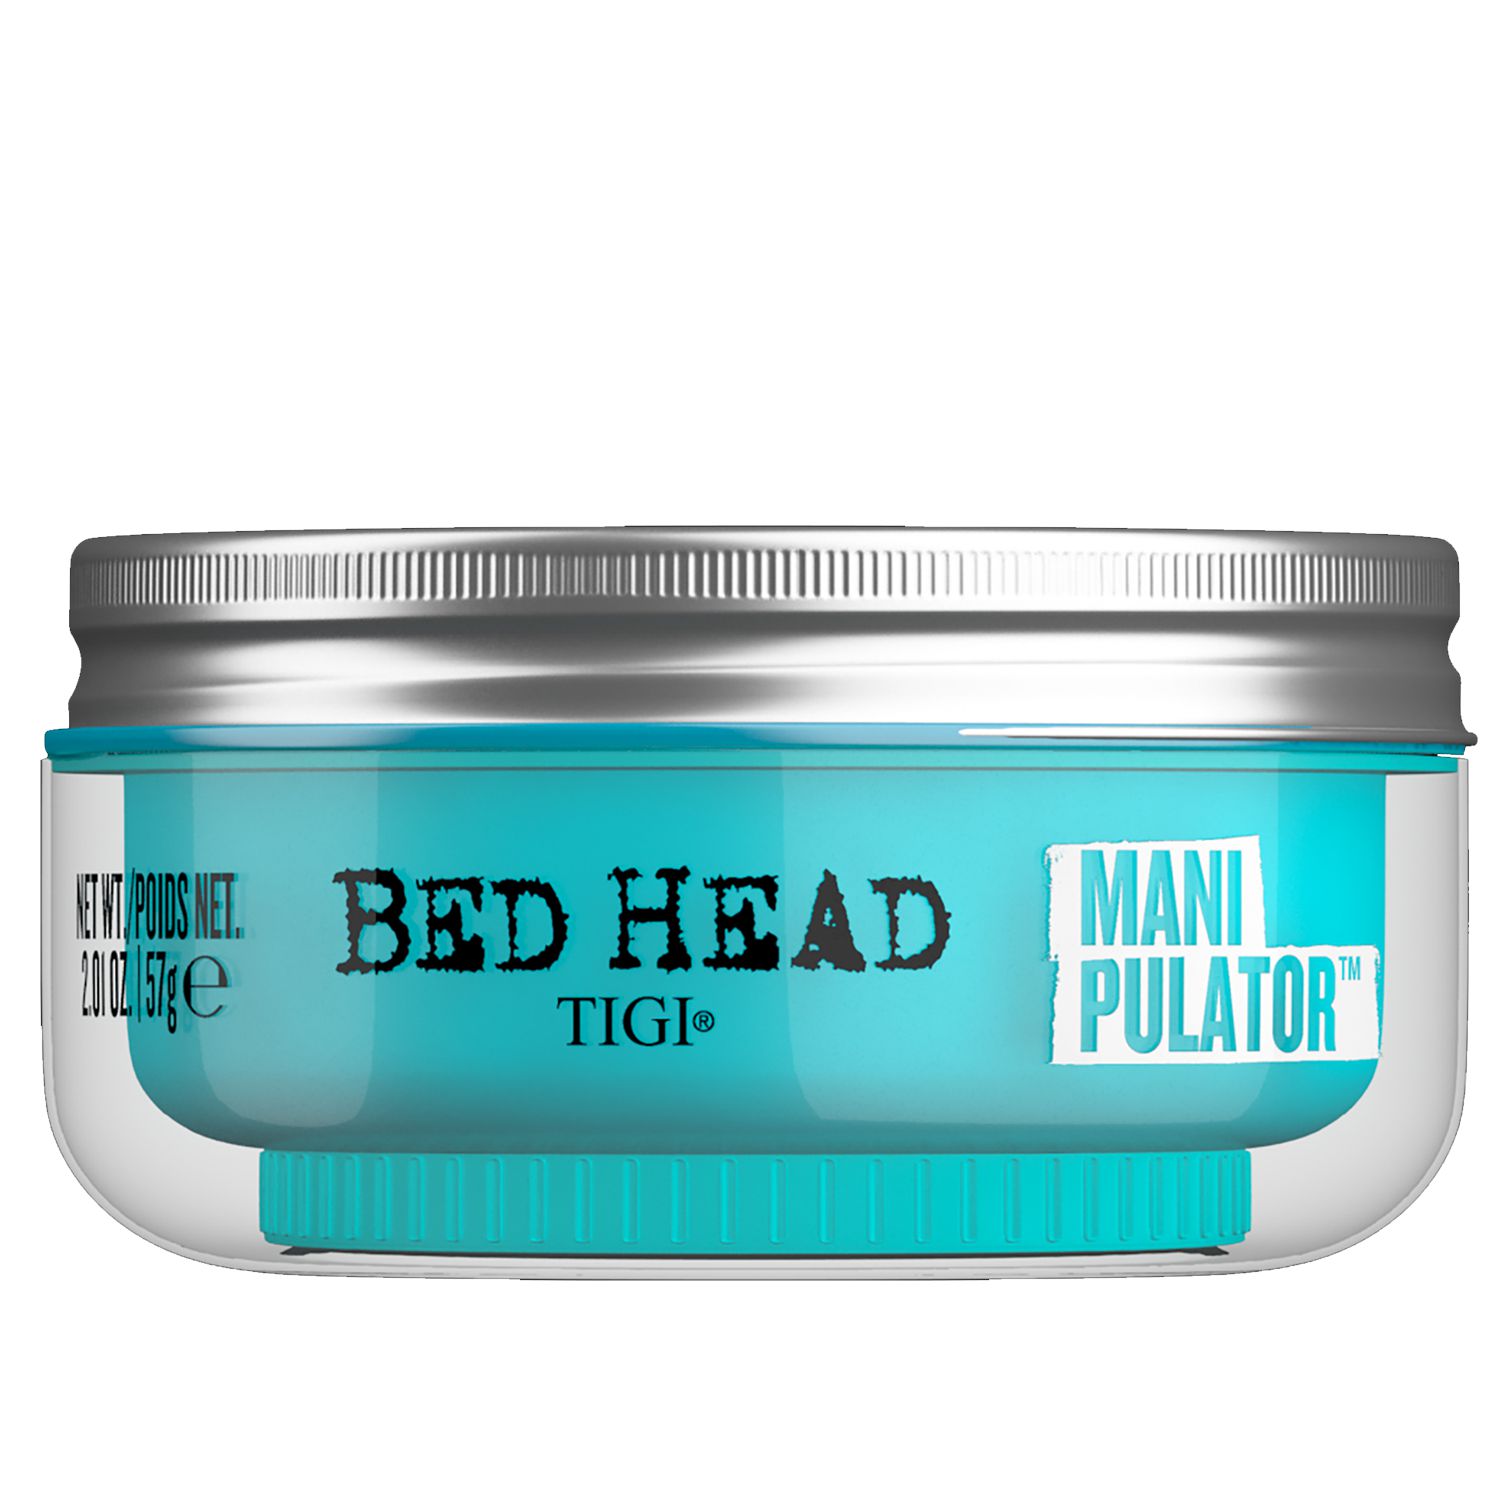 TIGI Bed Head Manipulator™ 57 g